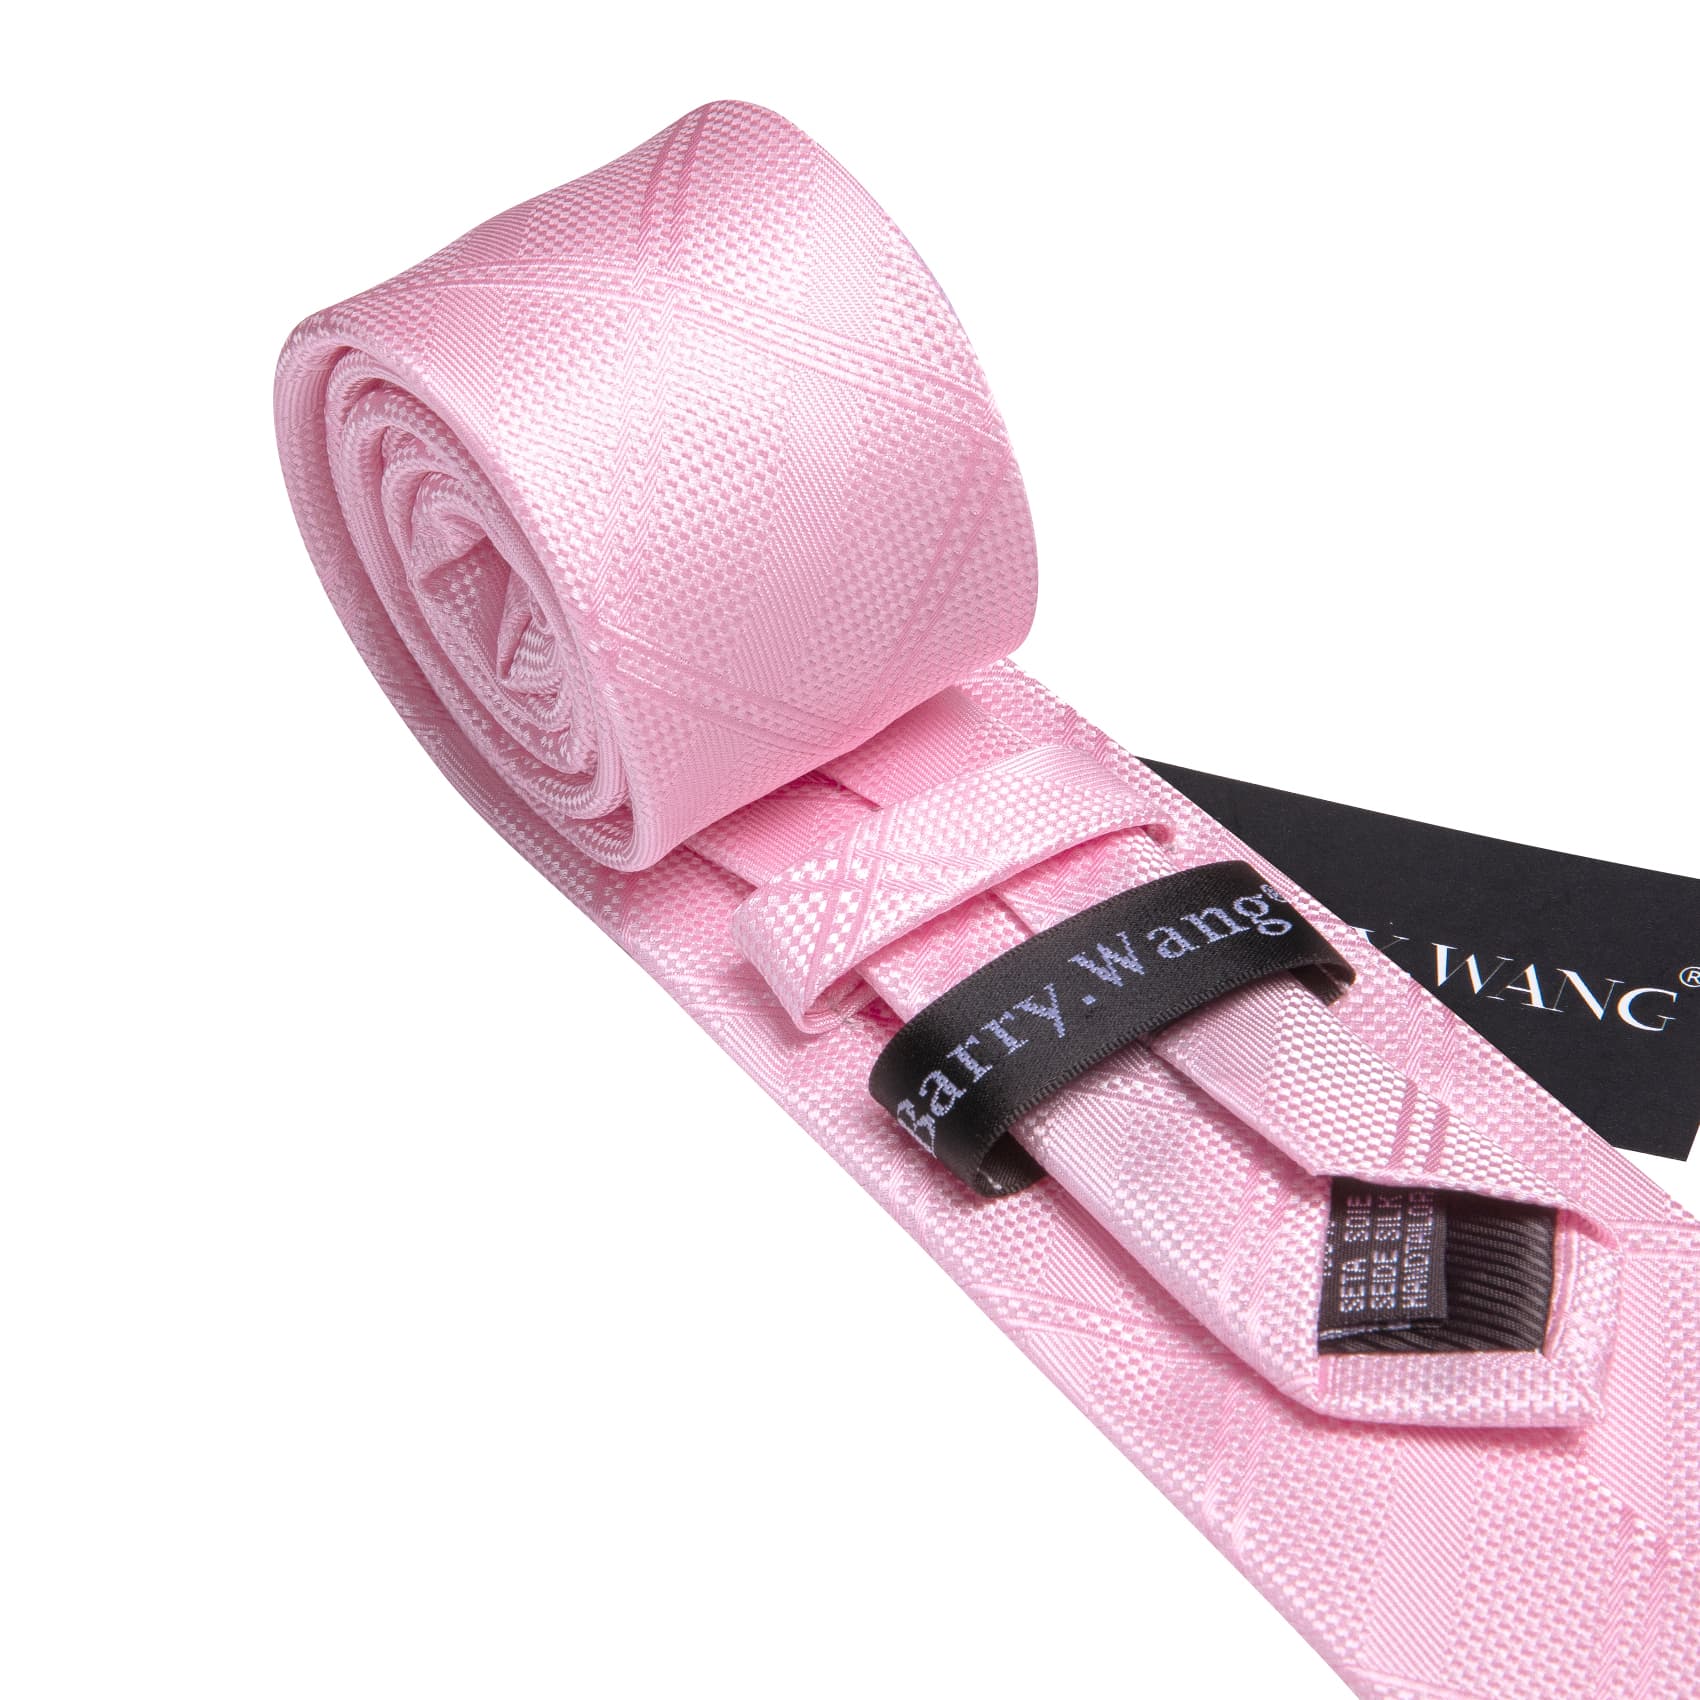  Pink Tie Mens Solid Checkered Necktie Set